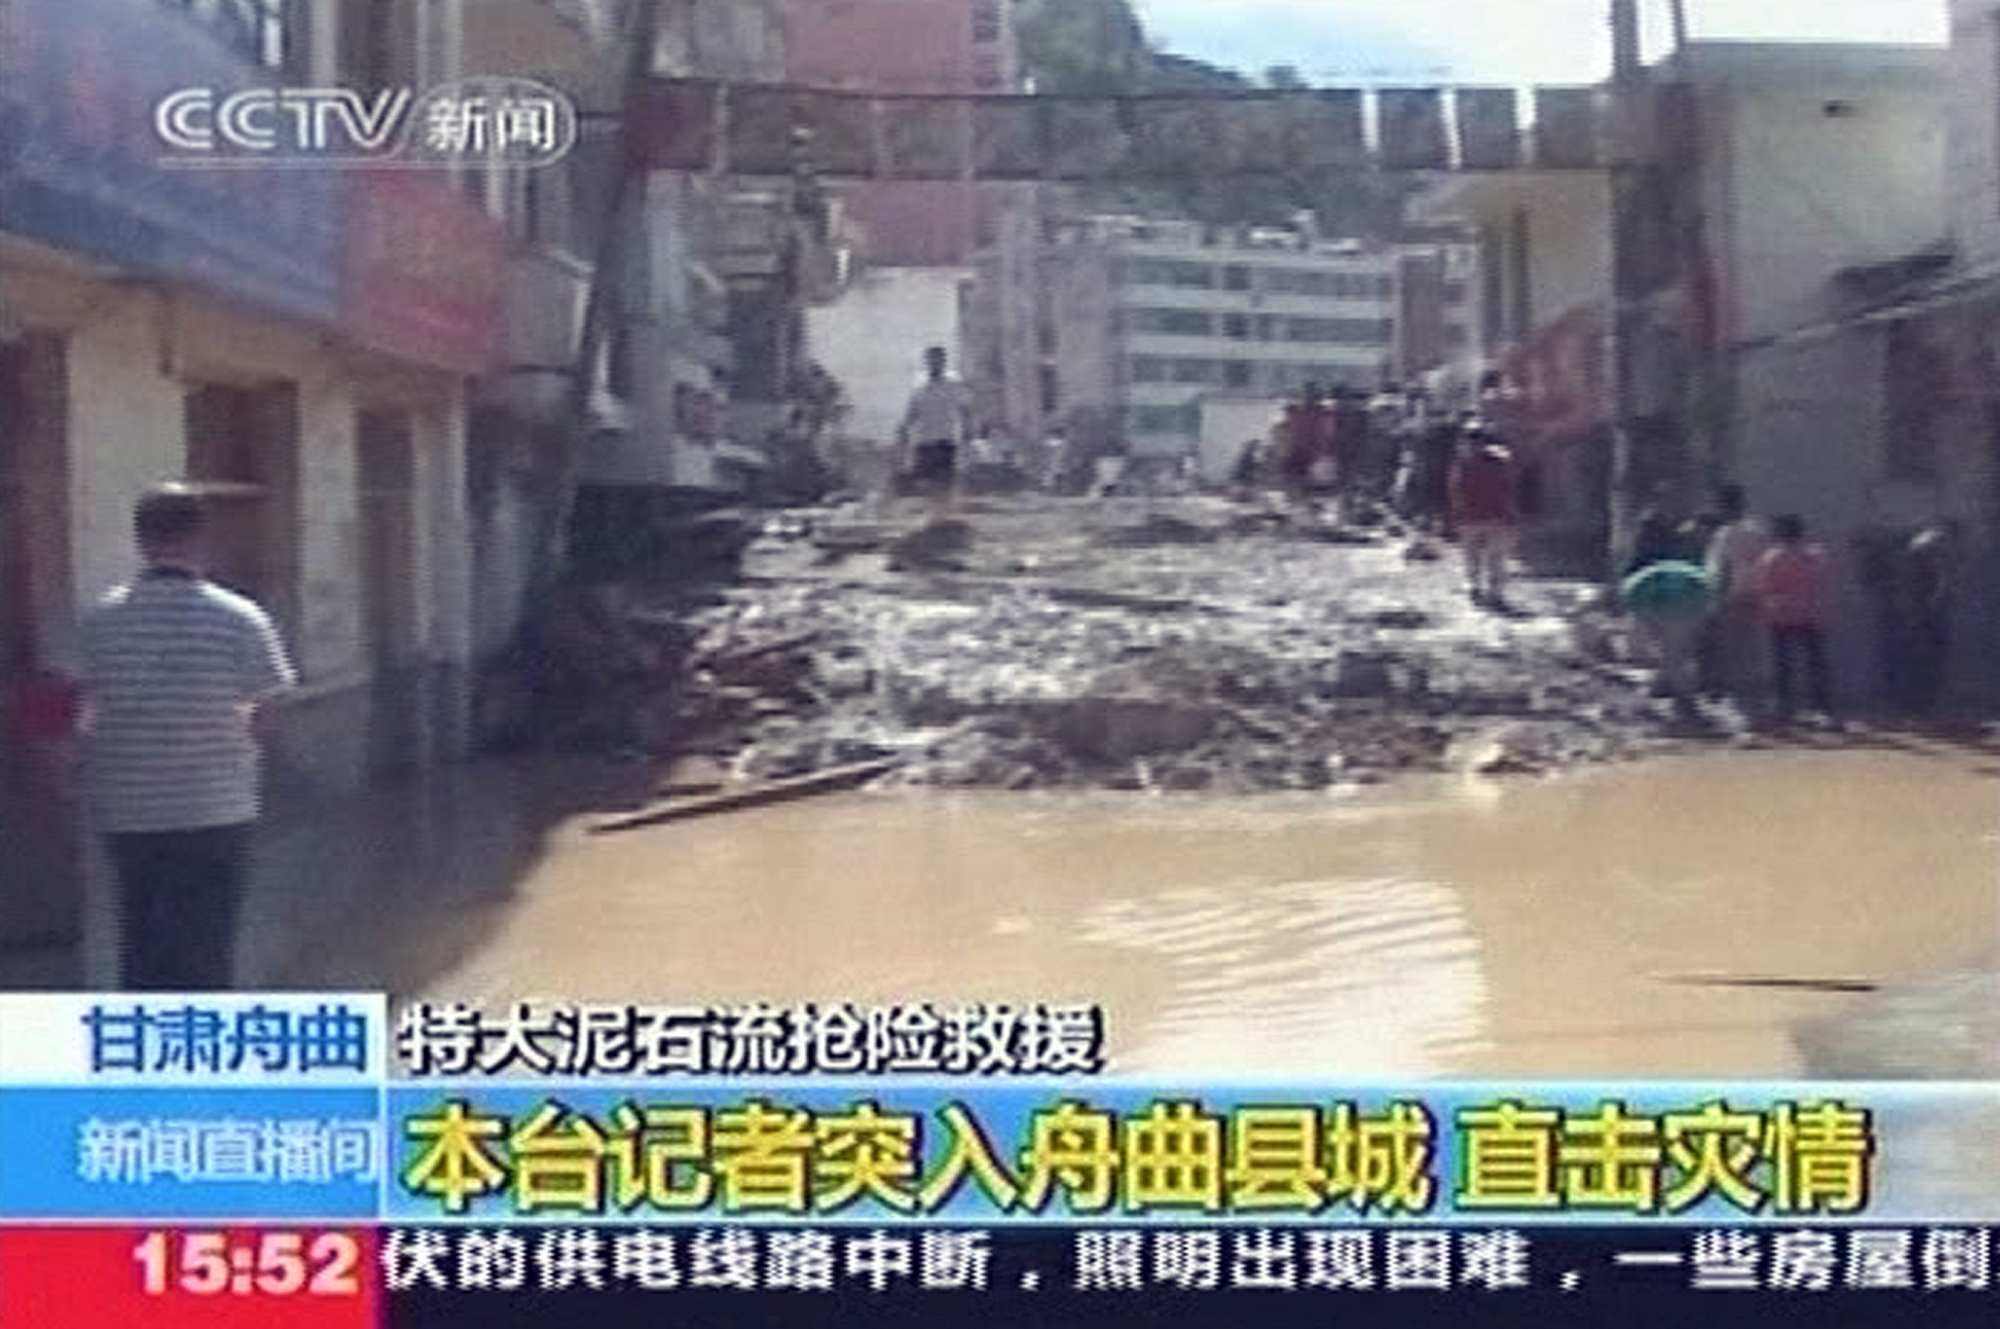 regn, Kina, Jordskalv, Översvämningar, Jordskred, Dödsfall, Brott och straff